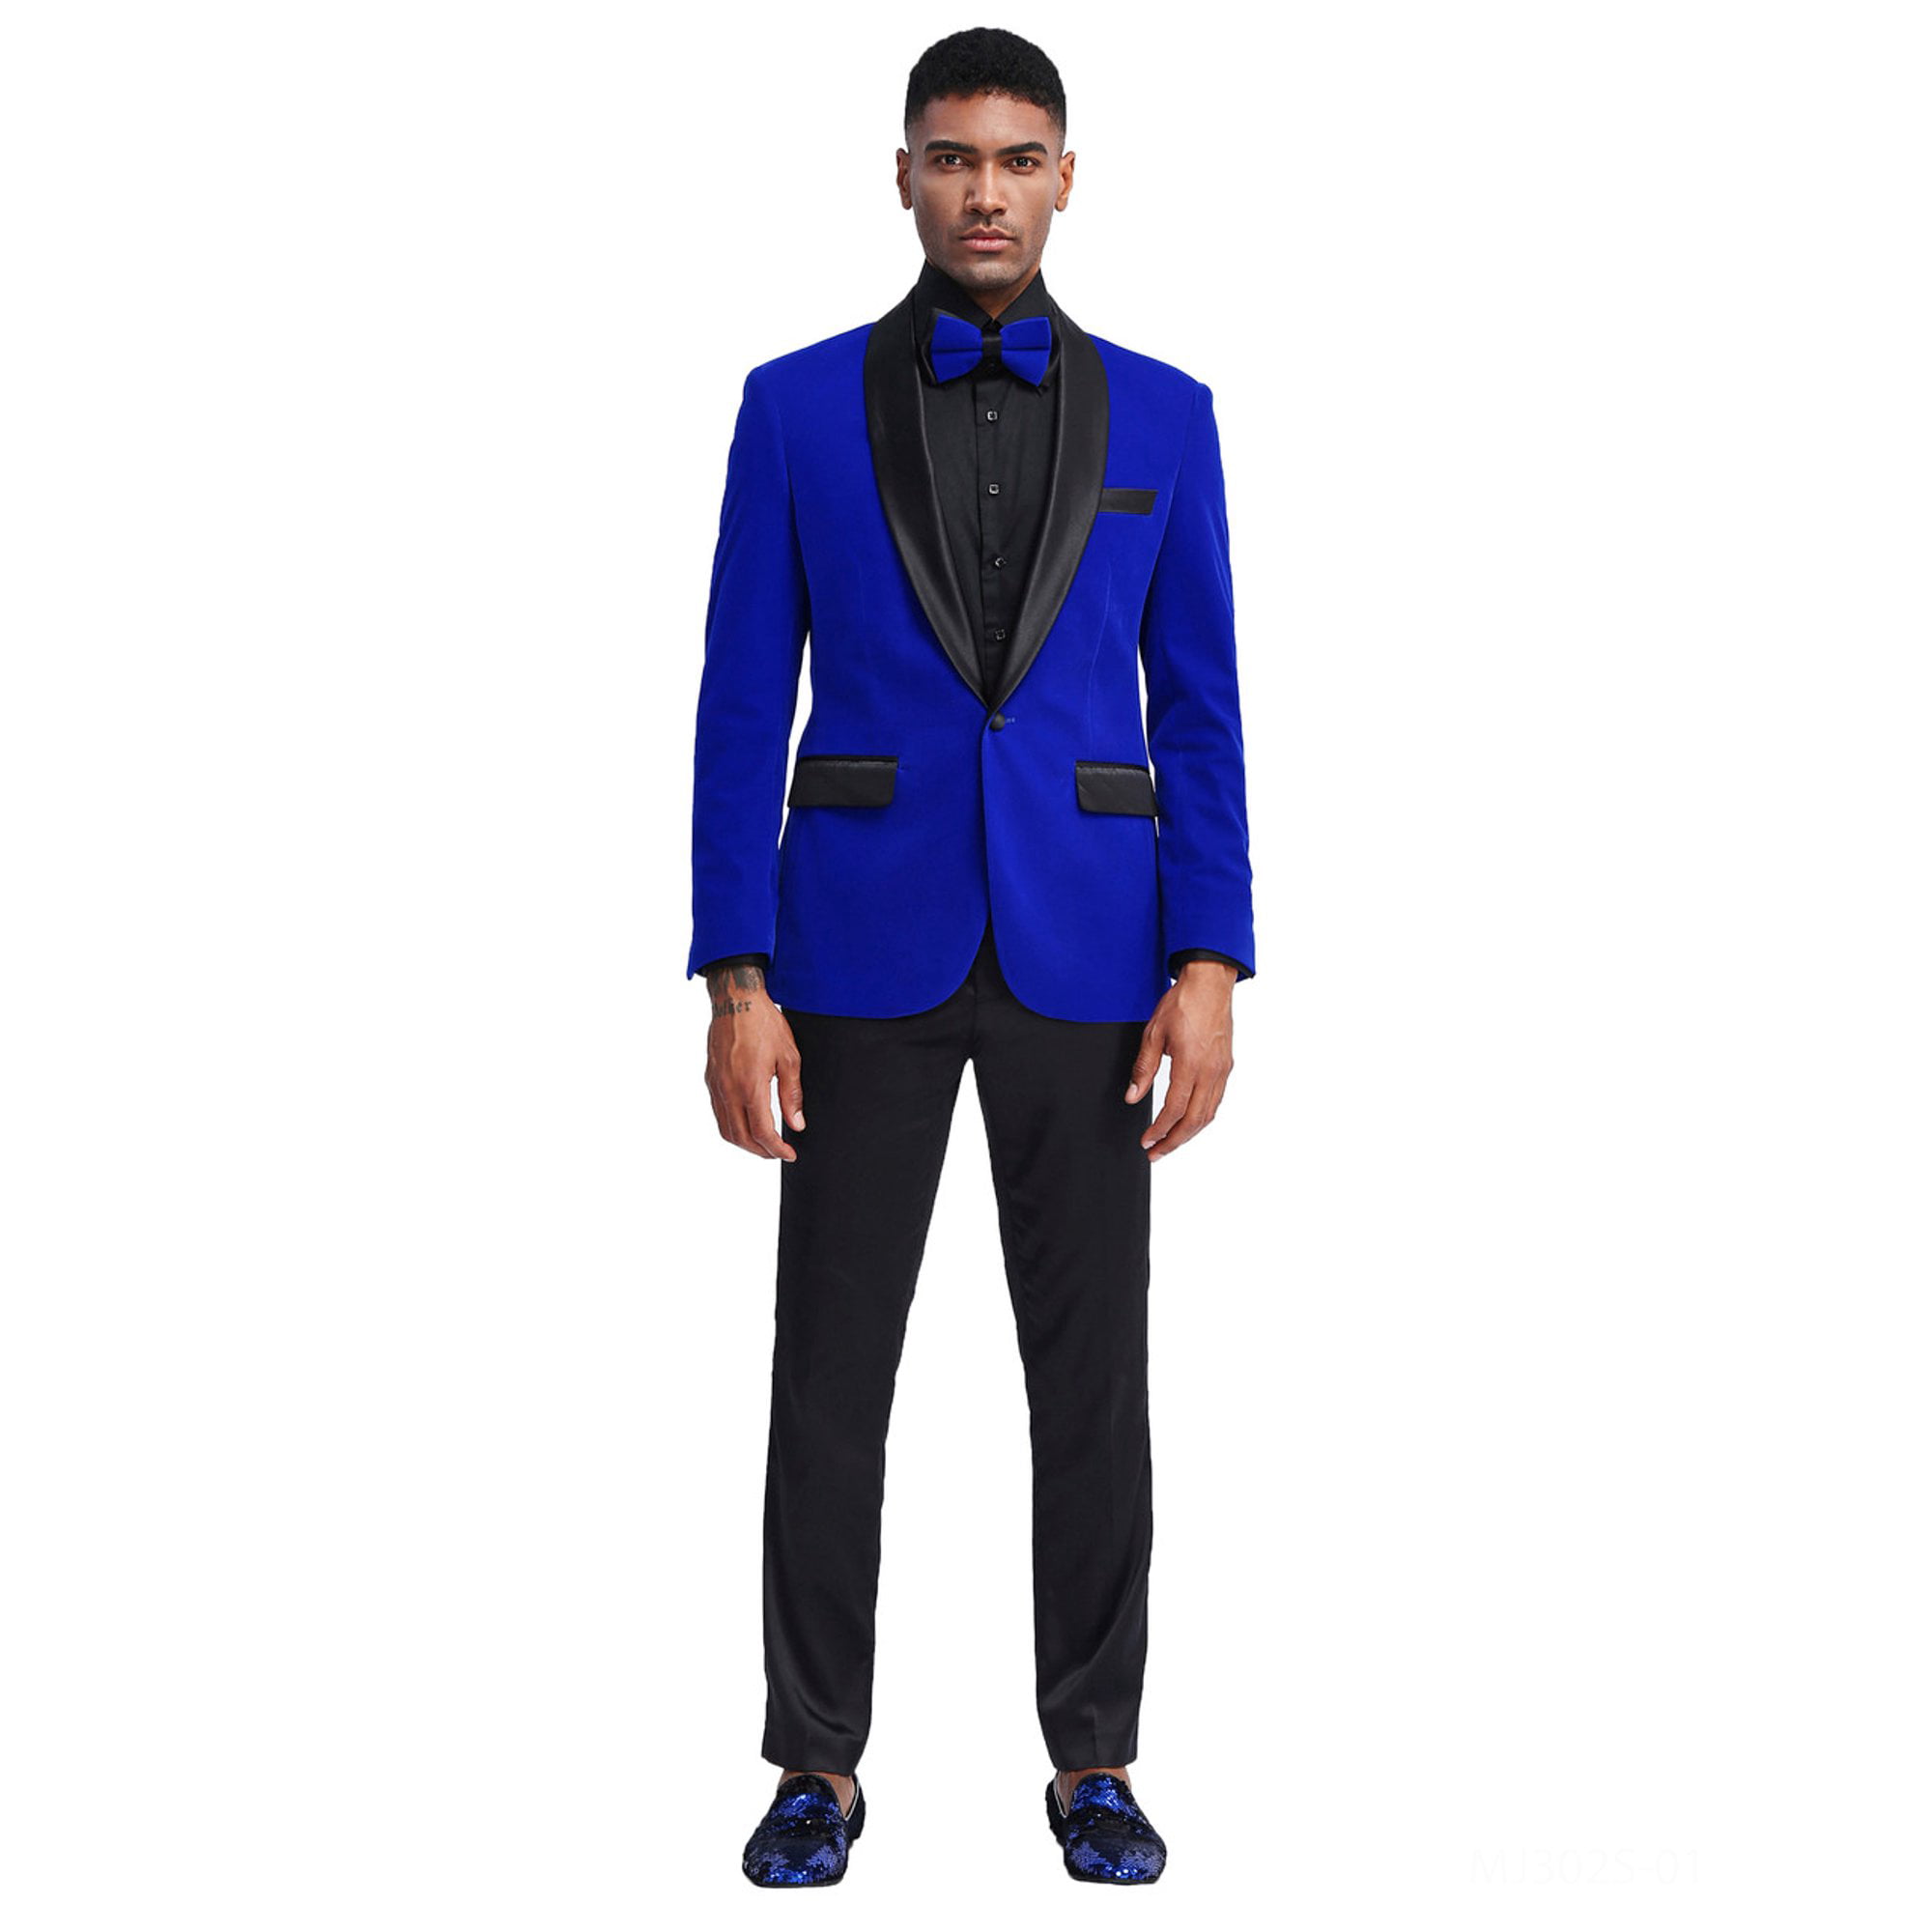  Royal Blue Tuxedo For Prom